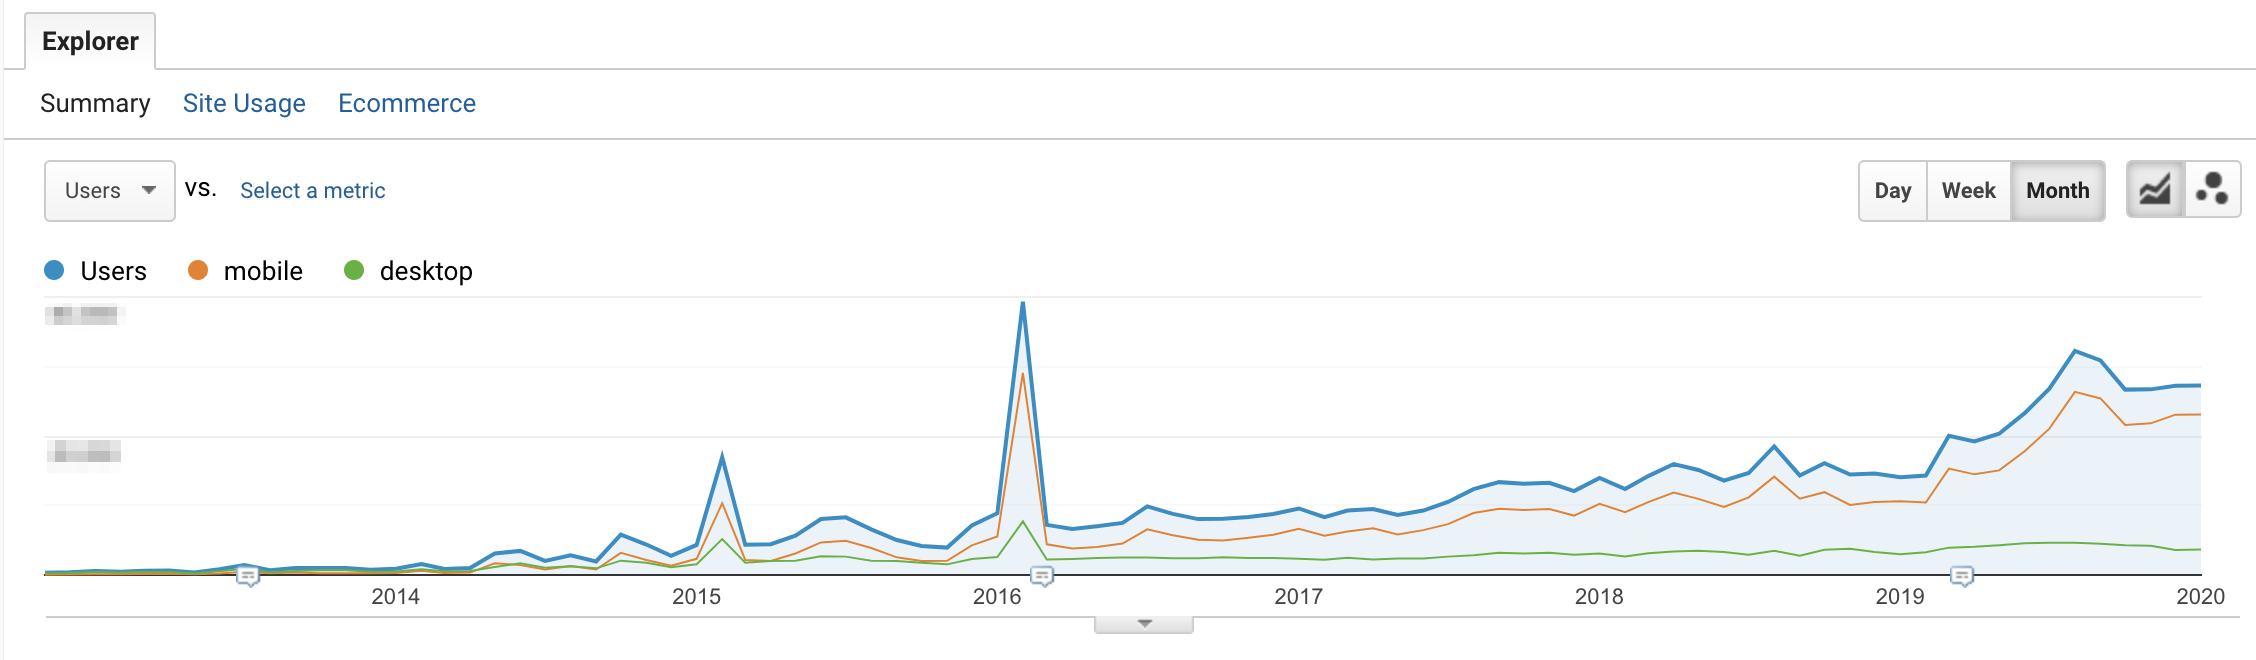 Mobile vs. desktop traffic - Gudog's blog](https://wp.frontity.org/wp-content/uploads/2020/02/mobile-vs-desktop-traffic-gudog-1024x300.png)